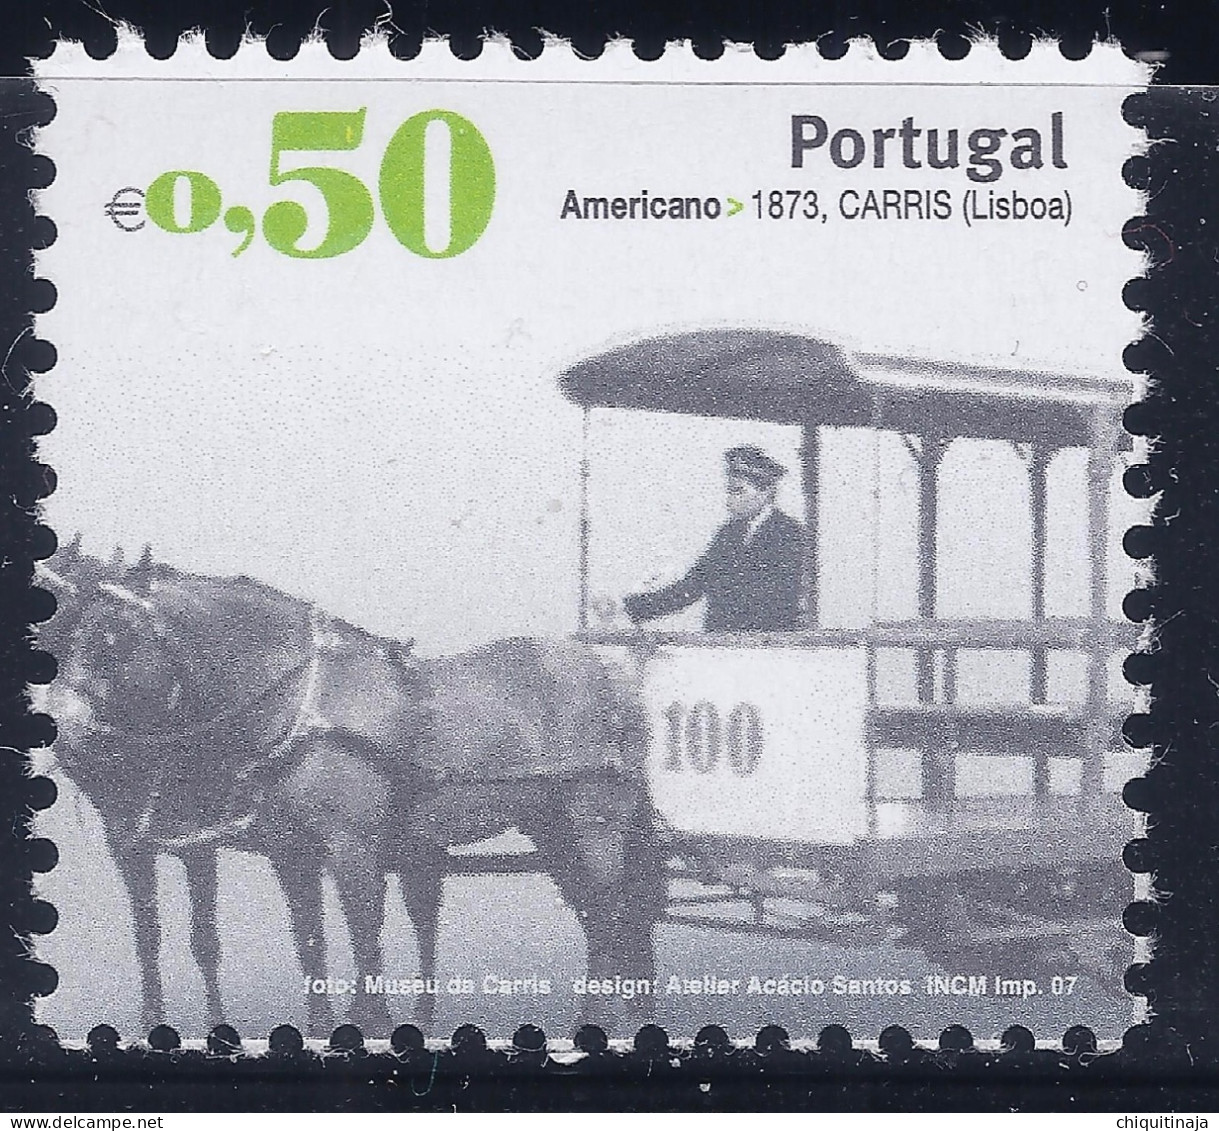 Portugal 2007 “Transportes Urbanos” MNH/** - Nuevos